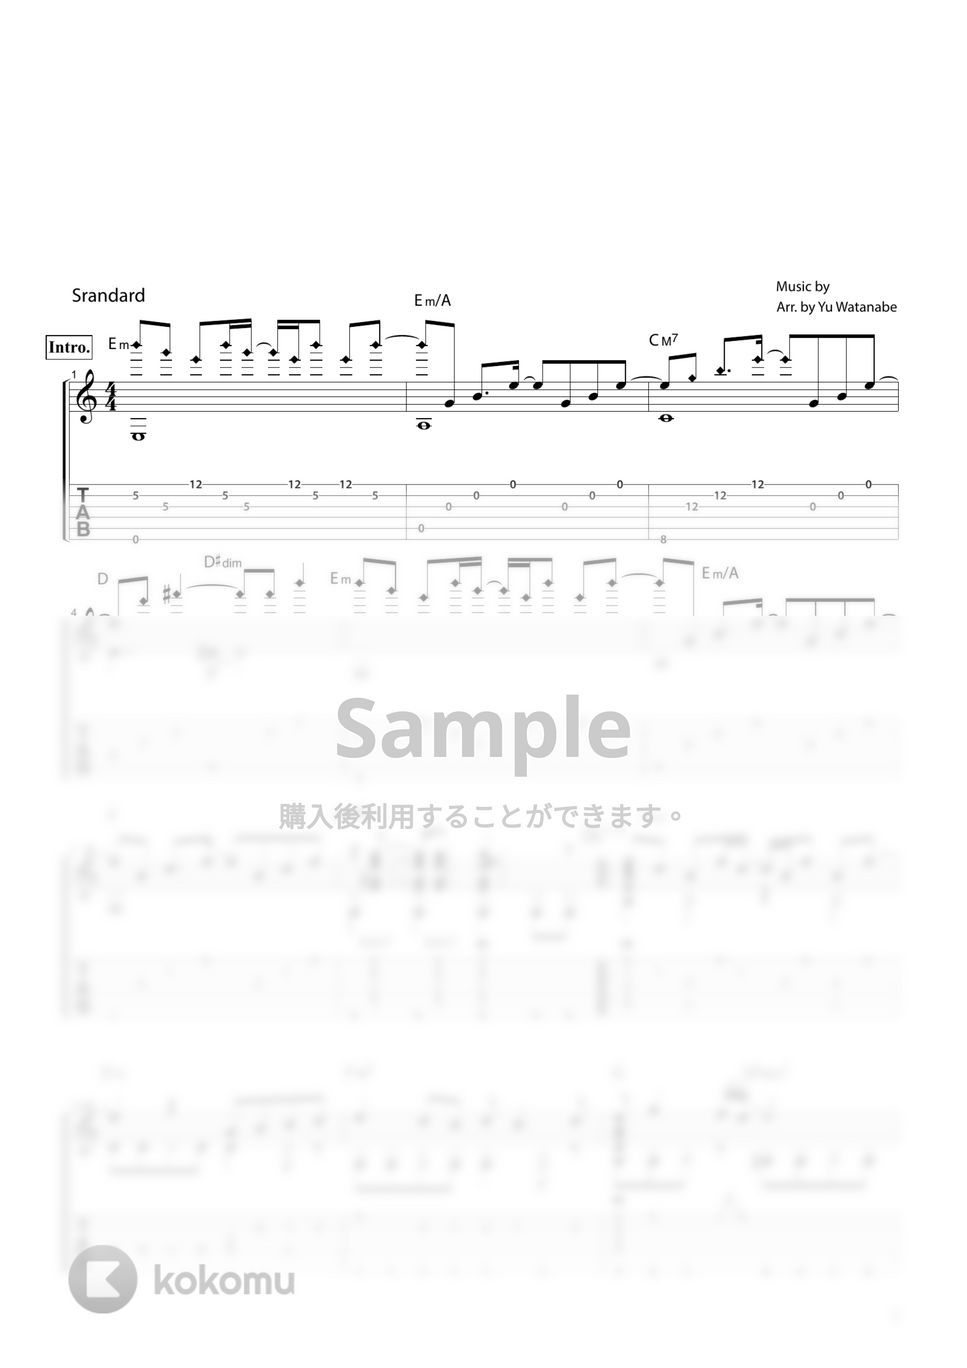 椎名林檎 - 本能 by わたなべゆう